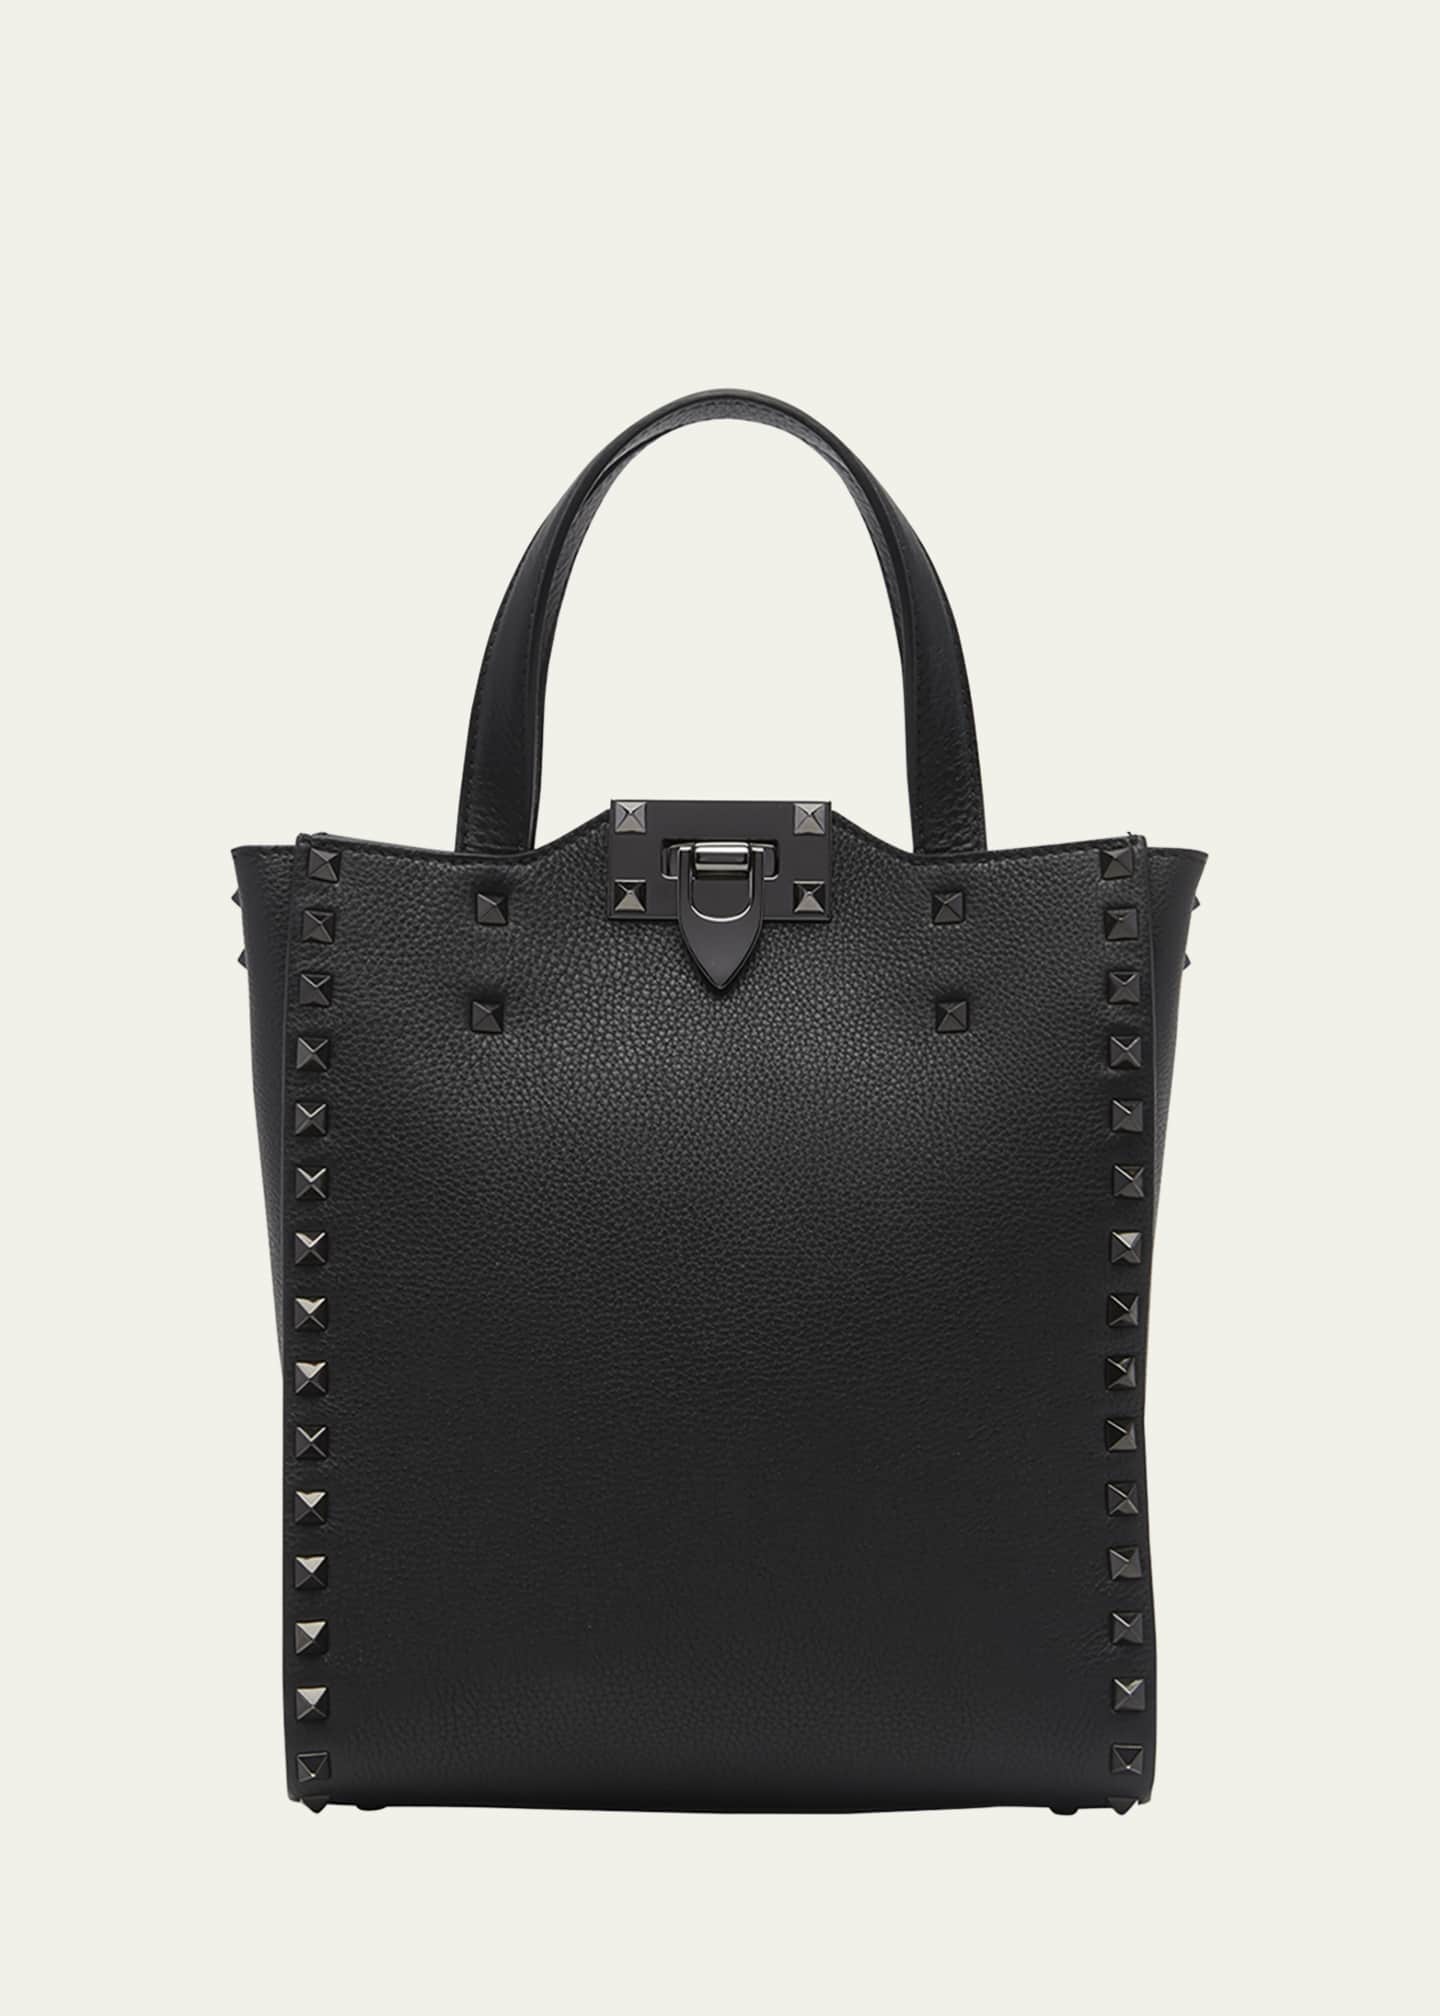 Shop Valentino Garavani Rockstud Small Leather Shoulder Bag